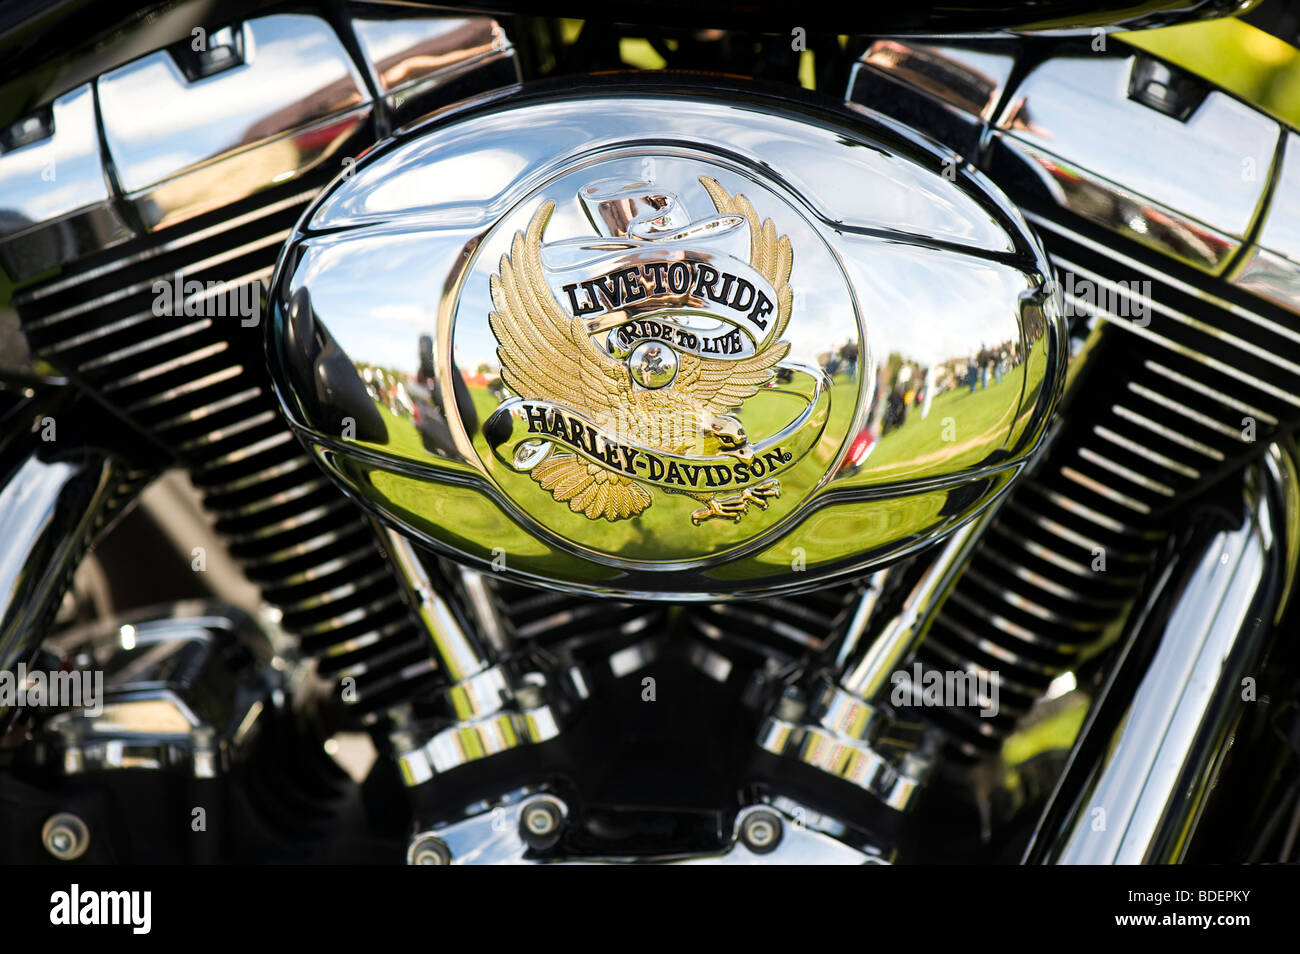 Moto Harley Davidson moteur v-twin avec 'Live to ride' boîtier personnalisé close up detail. Selective focus Banque D'Images